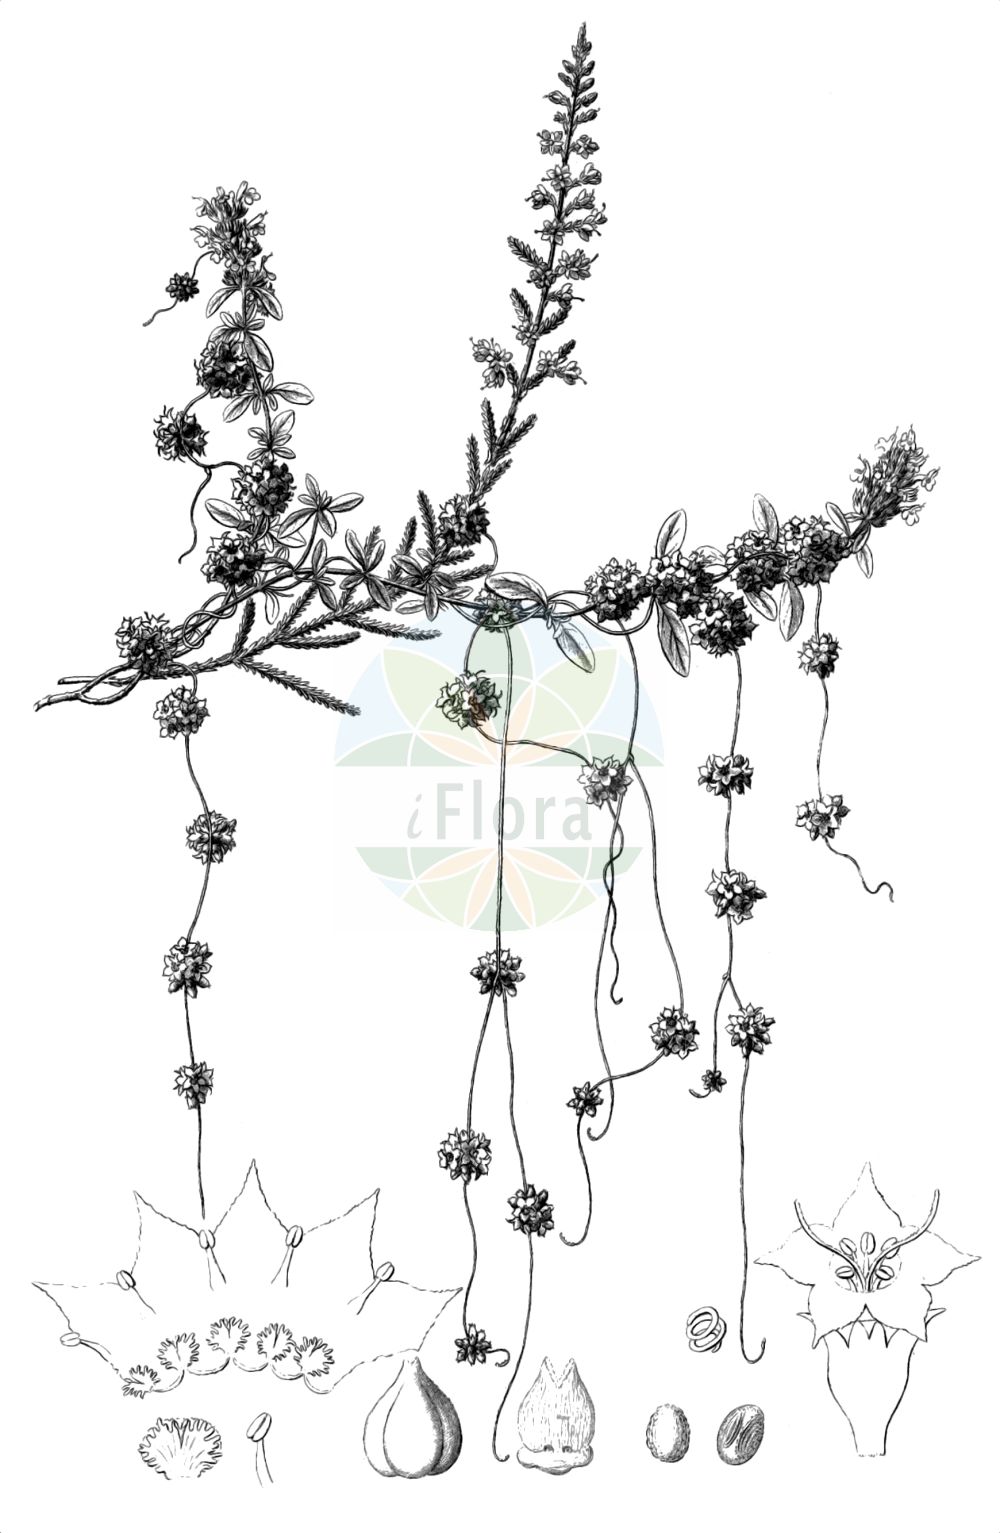 Historische Abbildung von Cuscuta epithymum (Quendel-Seide - Dodder). Das Bild zeigt Blatt, Bluete, Frucht und Same. ---- Historical Drawing of Cuscuta epithymum (Quendel-Seide - Dodder). The image is showing leaf, flower, fruit and seed.(Cuscuta epithymum,Quendel-Seide,Dodder,Cuscuta acutiflora,Cuscuta alba,Cuscuta barbuvea,Cuscuta calliopes,Cuscuta epithymum,Cuscuta godronii,Cuscuta prodanii,Cuscuta stenoloba,Cuscuta subulata,Cuscuta trifolii,Cuscuta zizyphi-loti,Quendel-Seide,Gewoehnliche Quendel-Seide,Klee-Seide,Thymian-Seide,Dodder,Clover Dodder,Common Dodder,Cuscuta,Seide,Dodder,Convolvulaceae,Windengewächse,Bindweed family,Blatt,Bluete,Frucht,Same,leaf,flower,fruit,seed,Reichenbach (1823-1832))